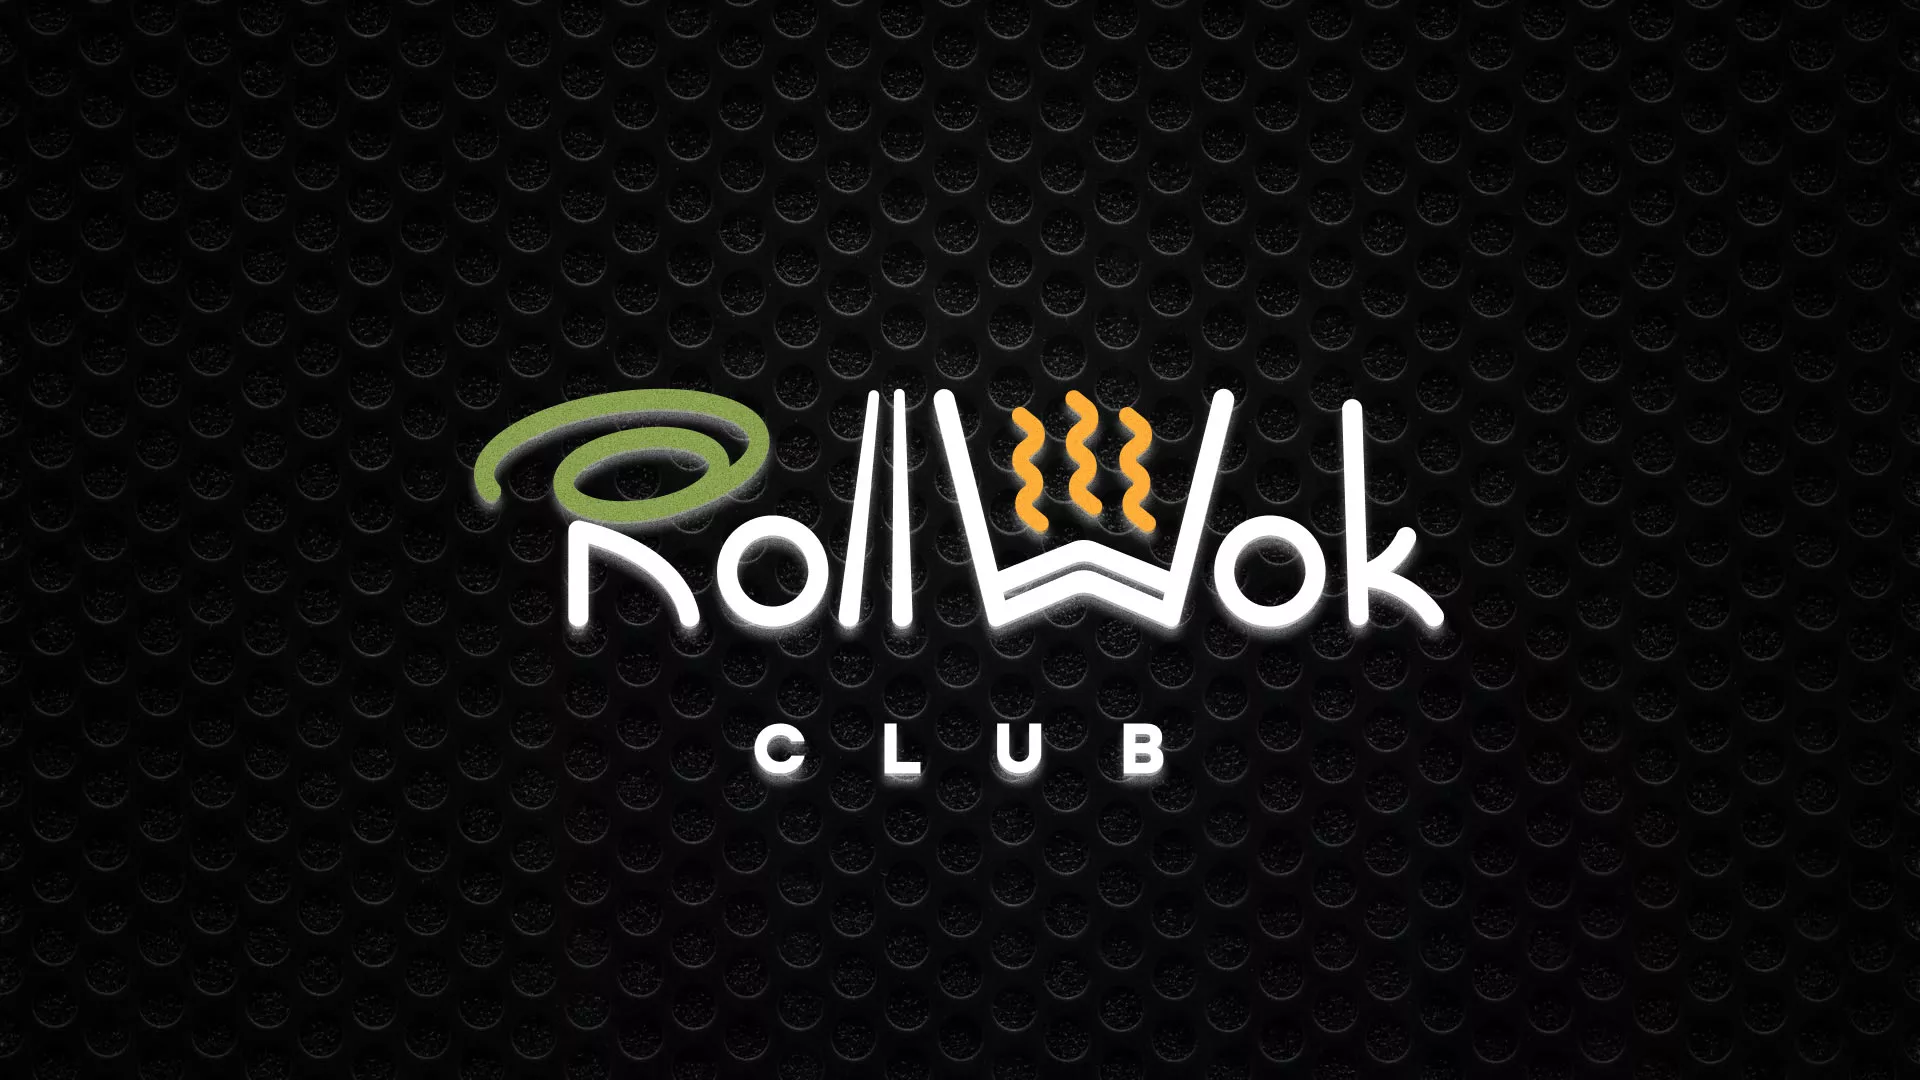 Брендирование торговых точек суши-бара «Roll Wok Club» в Красновишерске